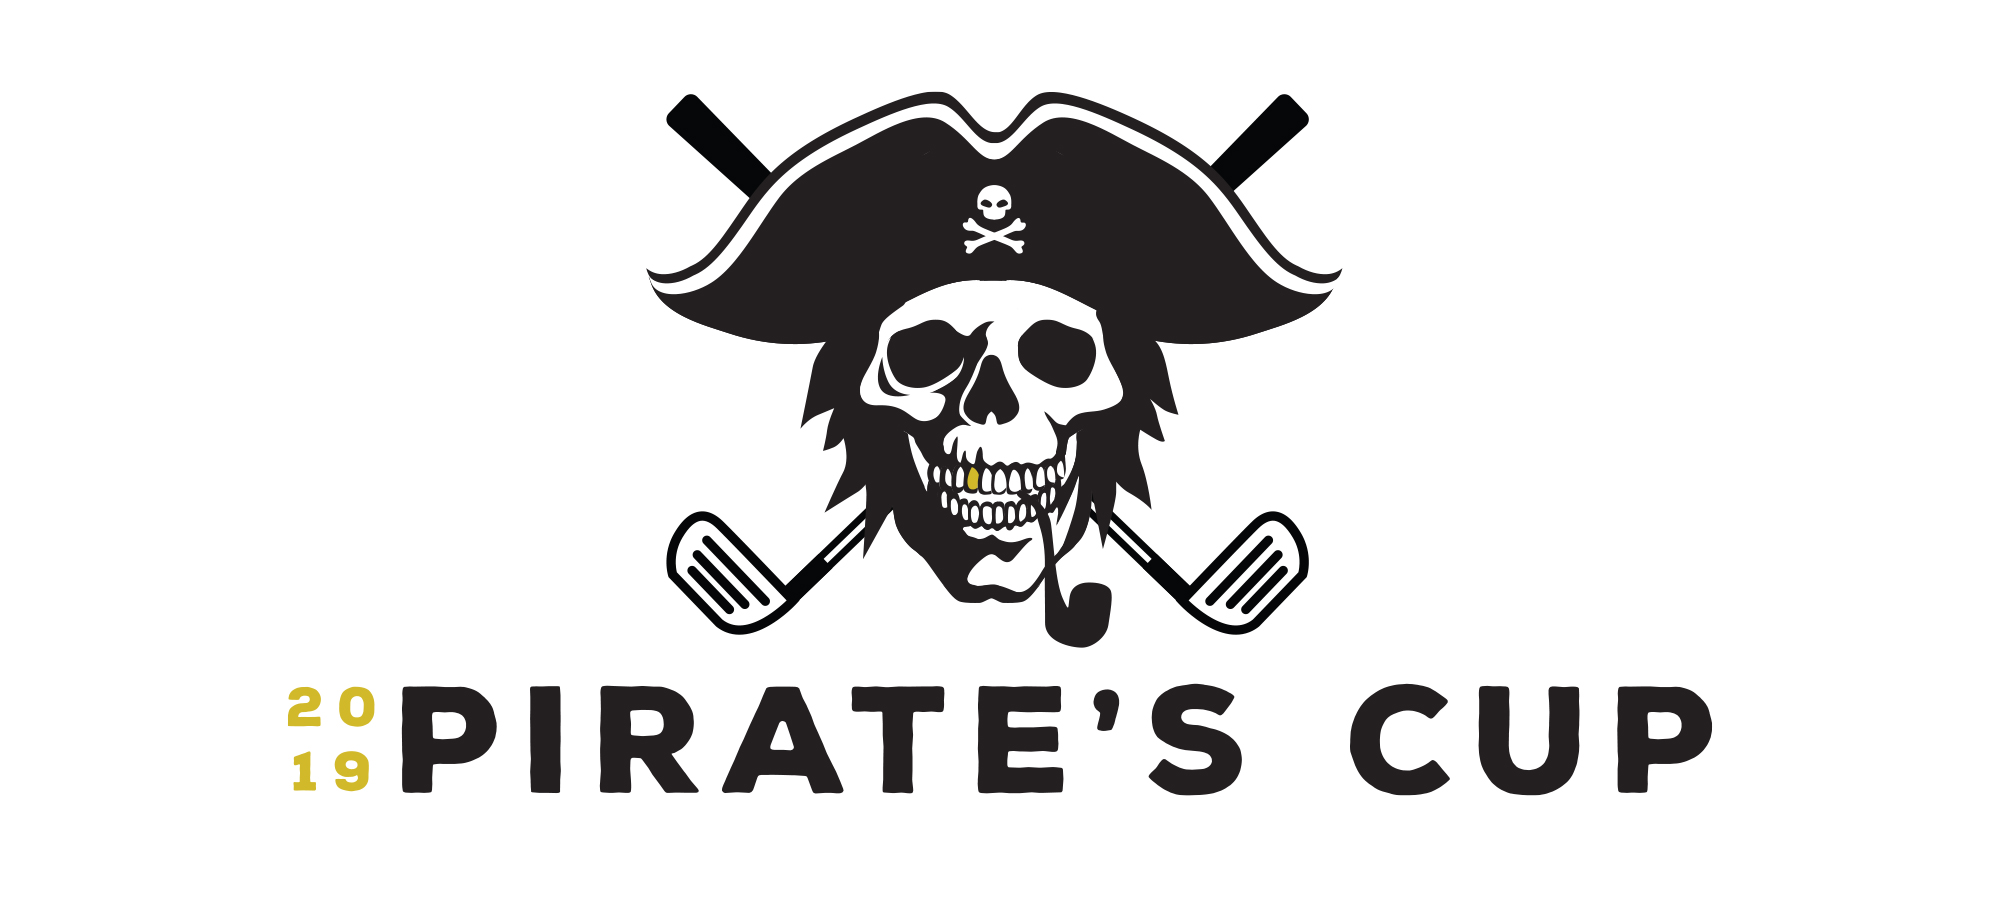 Pirate's Cup Golf Event Design